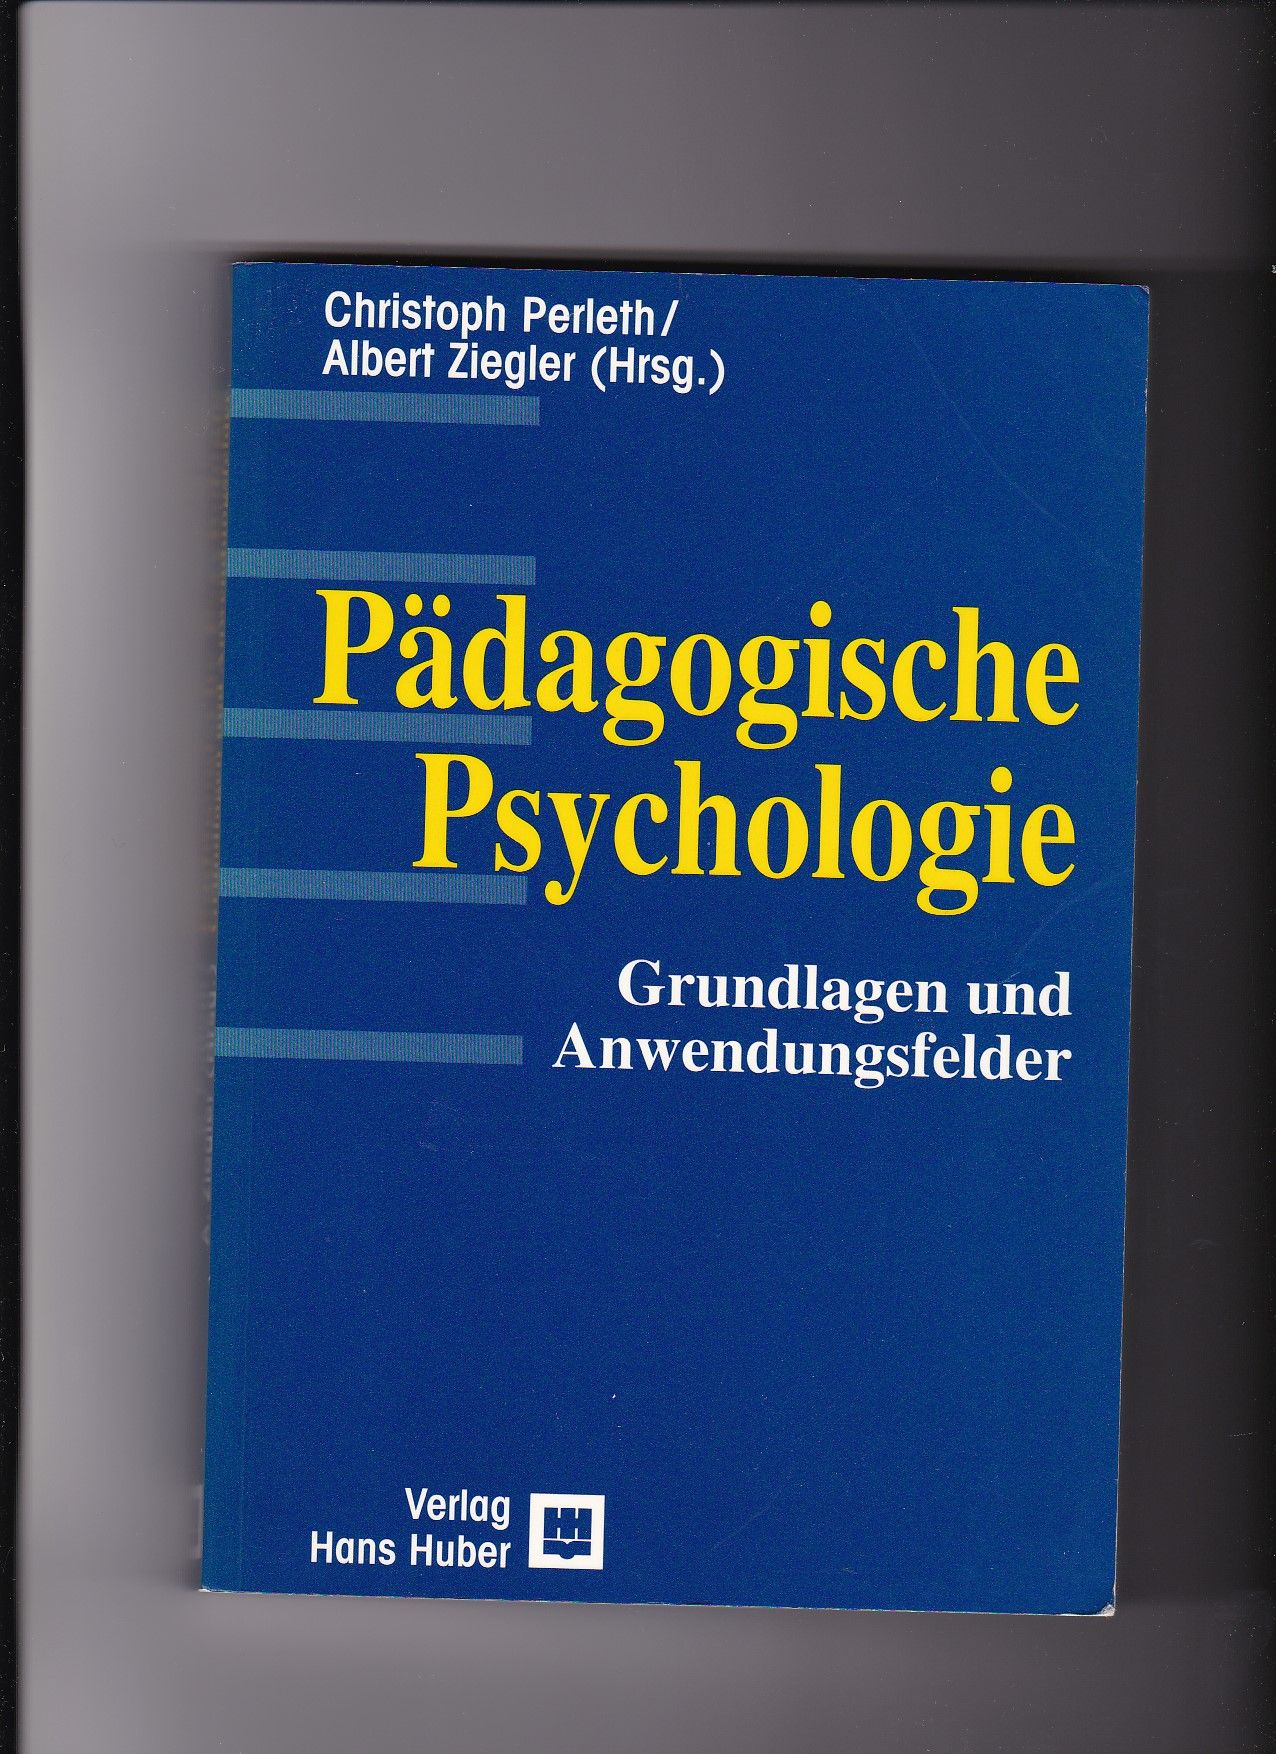 Christoph Perleth, Albert Ziegler, Pädagogische Psychologie - Grundlagen und Anwendungsfelder - Perleth, Christoph (Herausgeber)